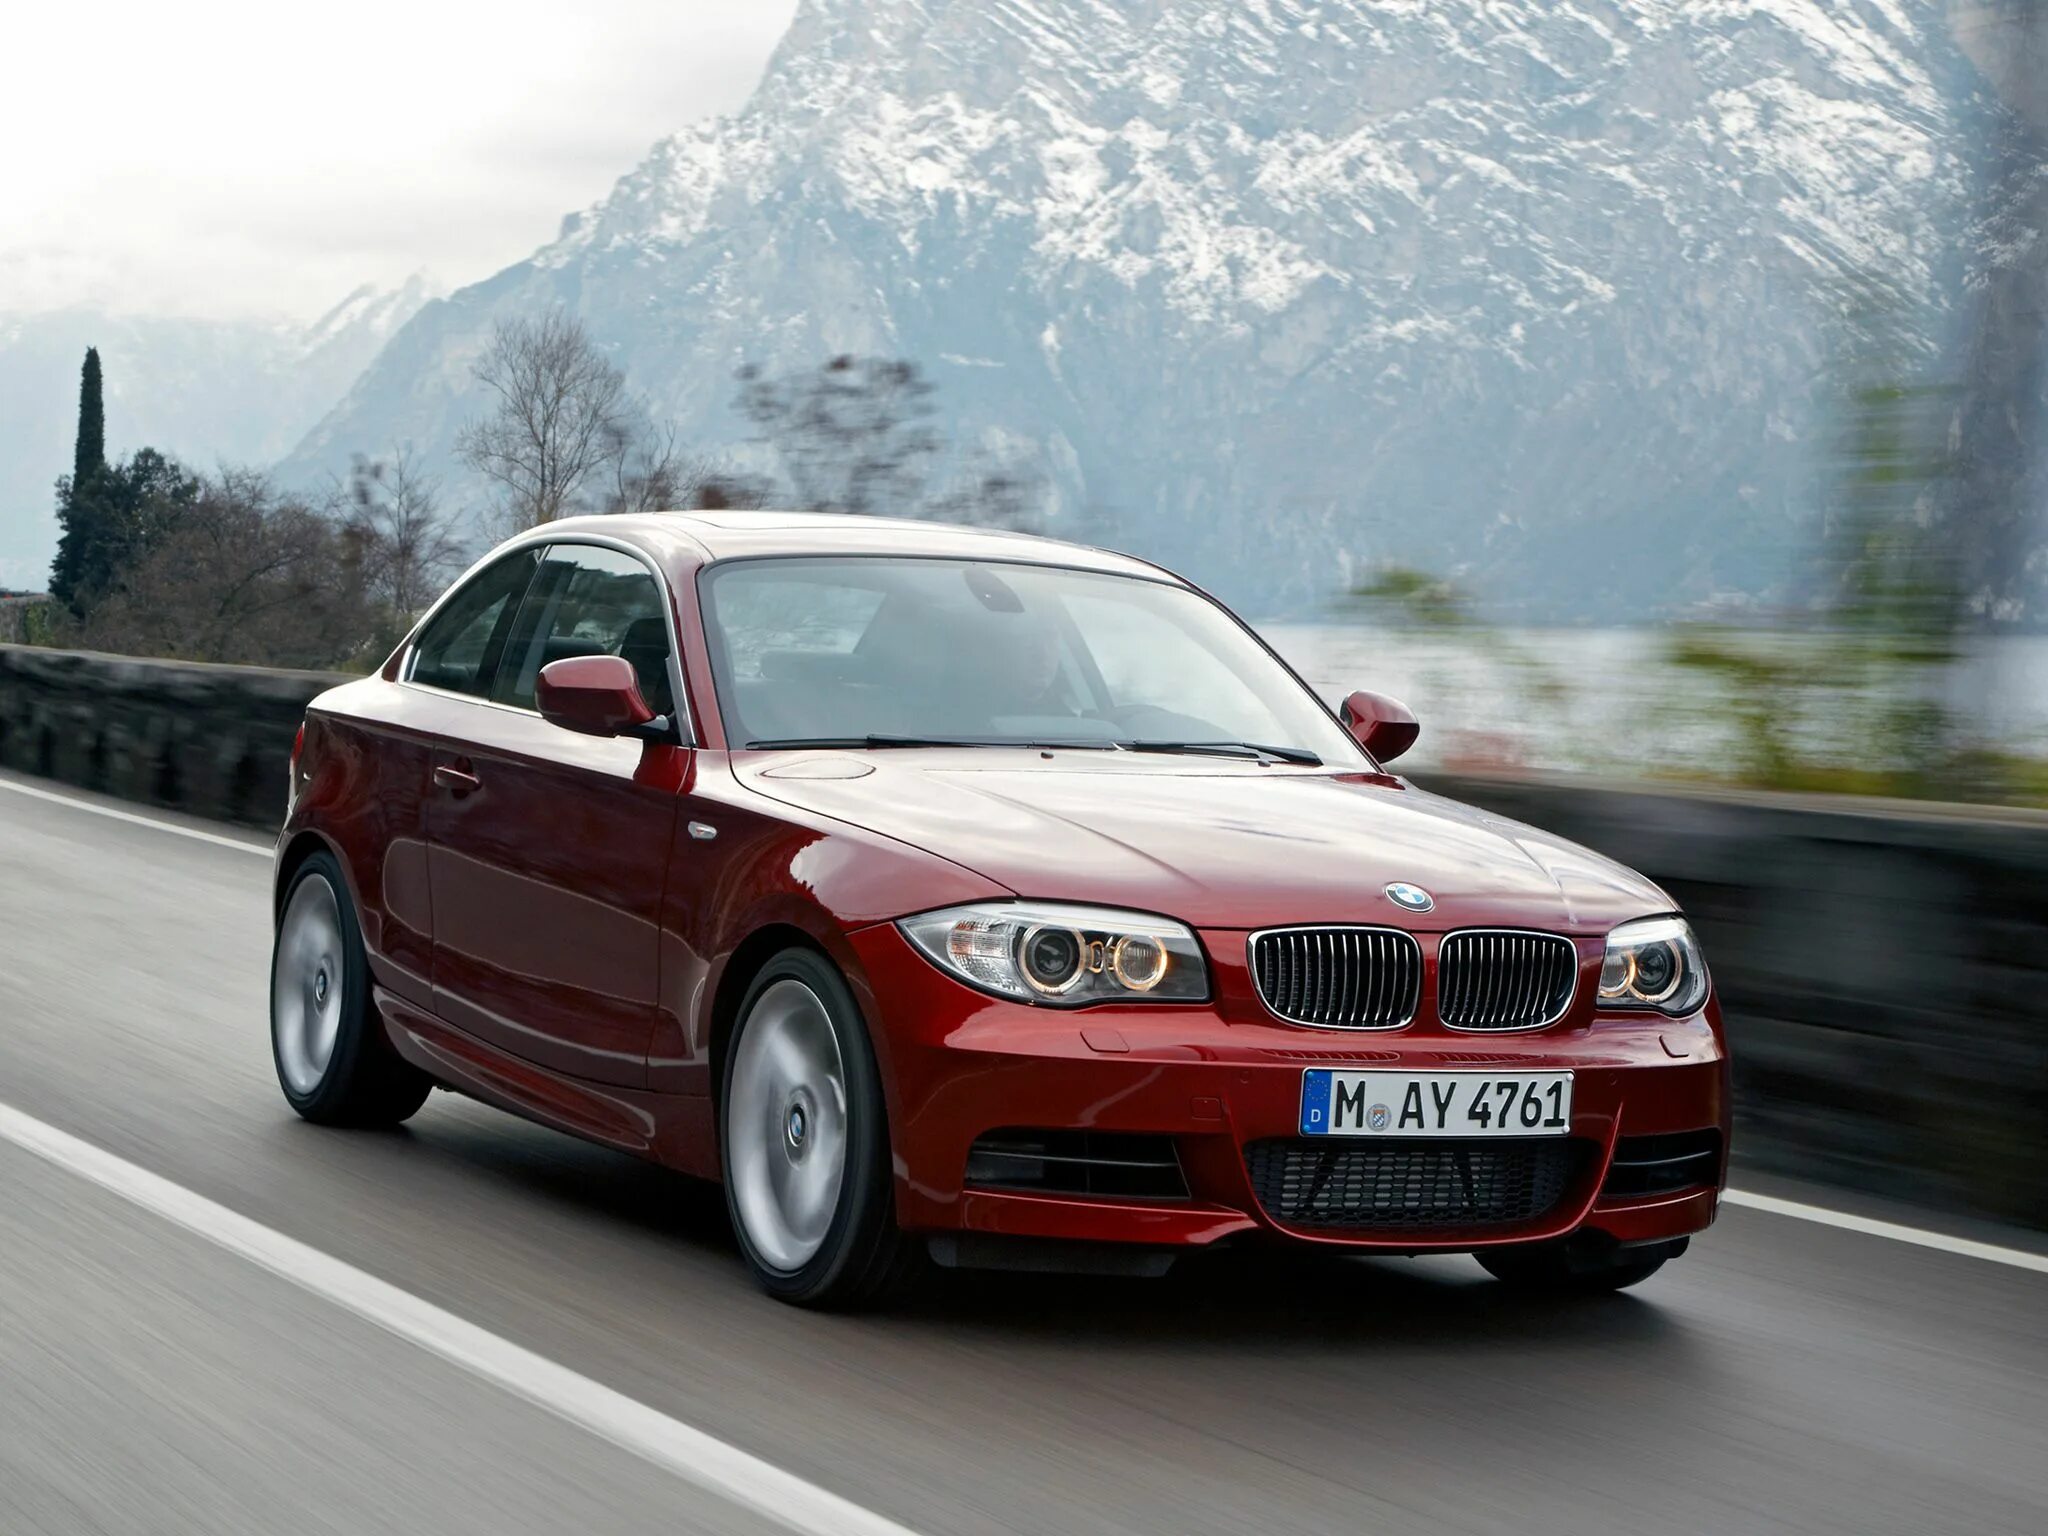 Автомобиль bmw 1. BMW 135i Coupe. BMW 135i Coupe 2011. BMW 1 Series Coupe e82. BMW e82 Coupe.